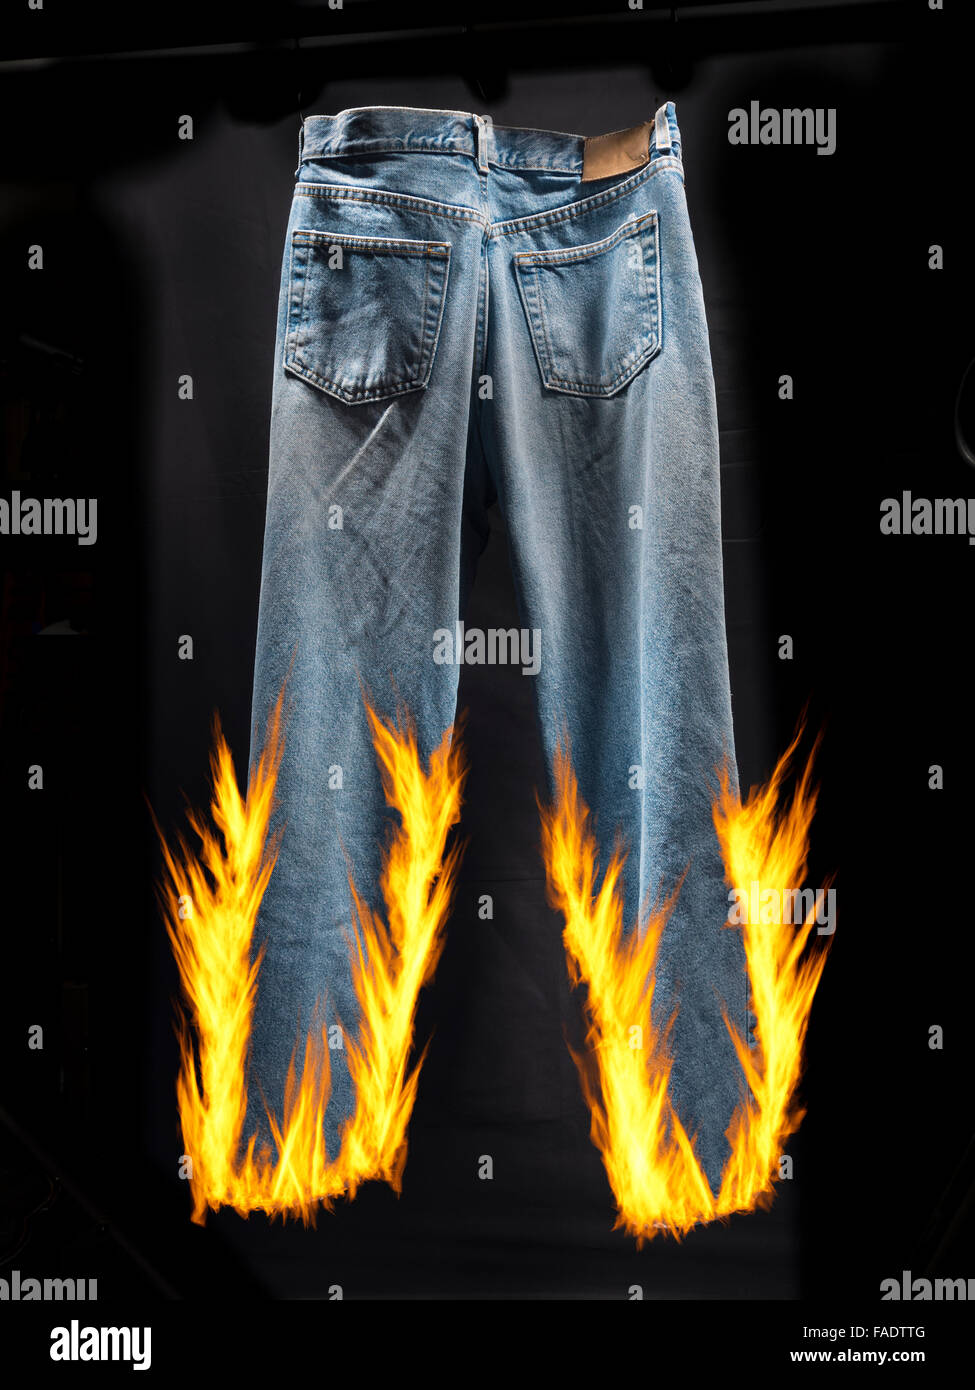 Blaue Jeans Set Feuer und Flamme für Idiom, Lügner, Lügner, Hosen in Brand  Stockfotografie - Alamy